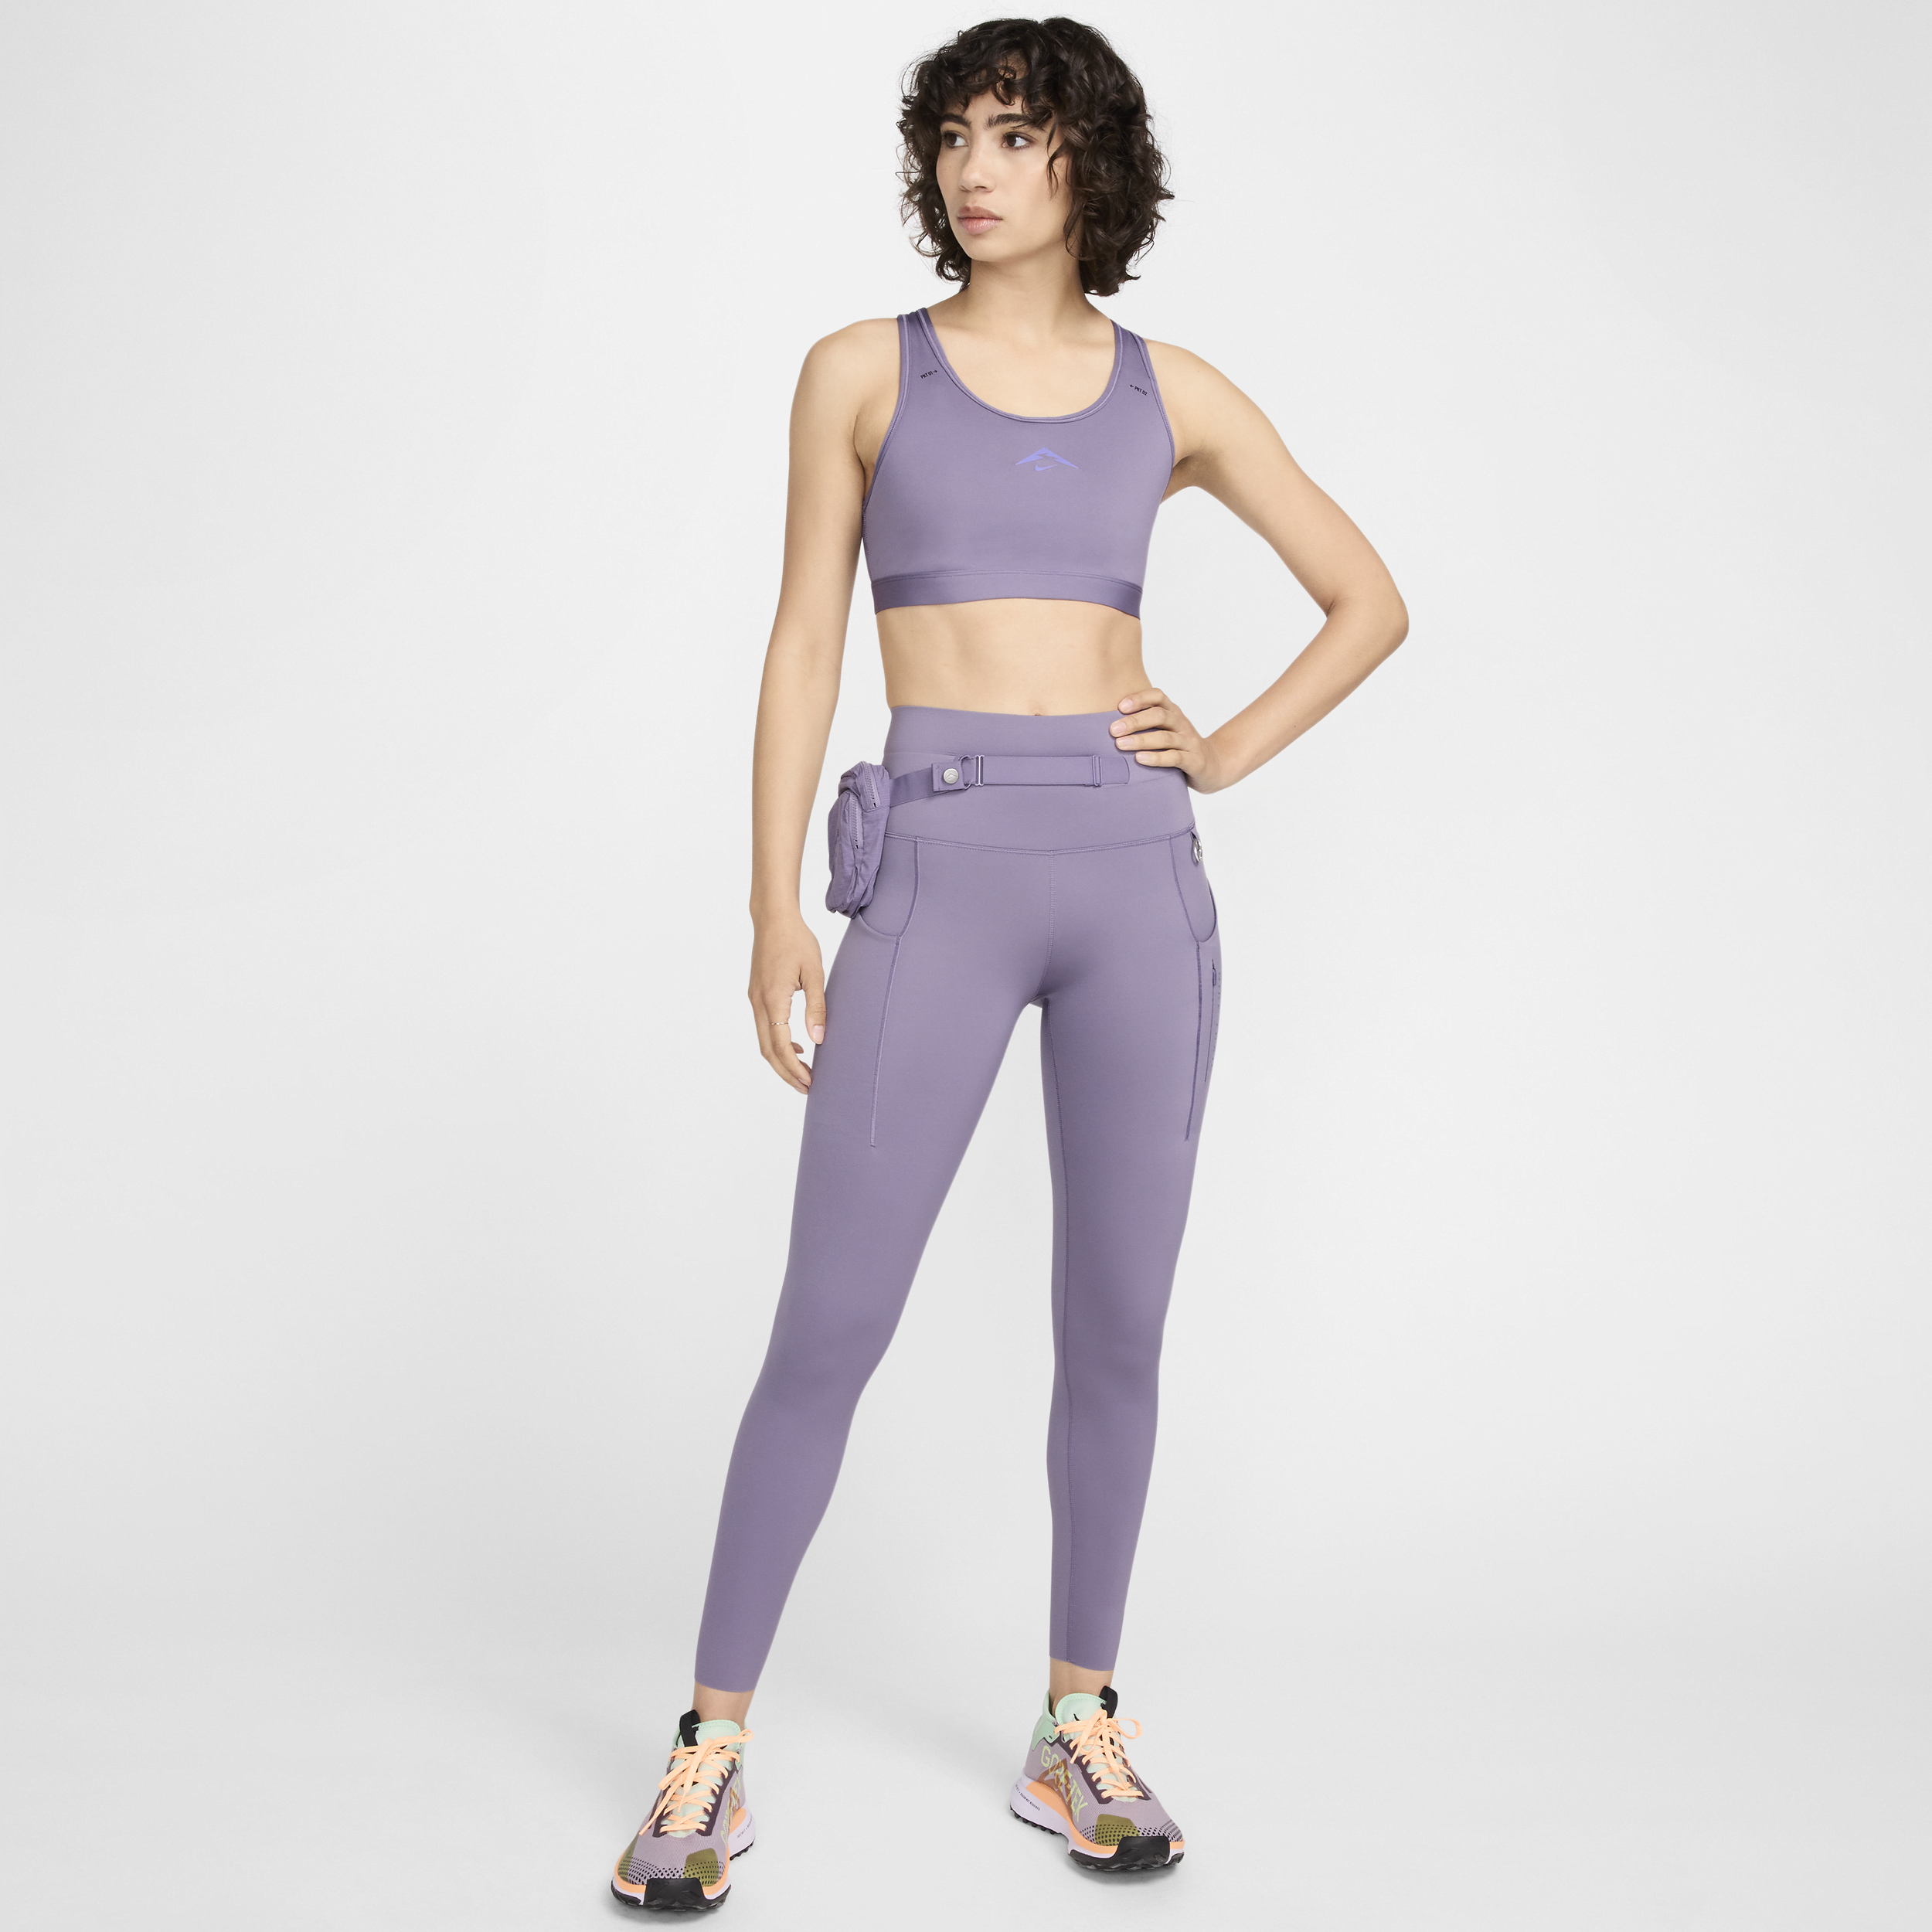 Leggings a 7/8 a vita alta con tasche e sostegno elevato Nike Trail Go – Donna - Viola